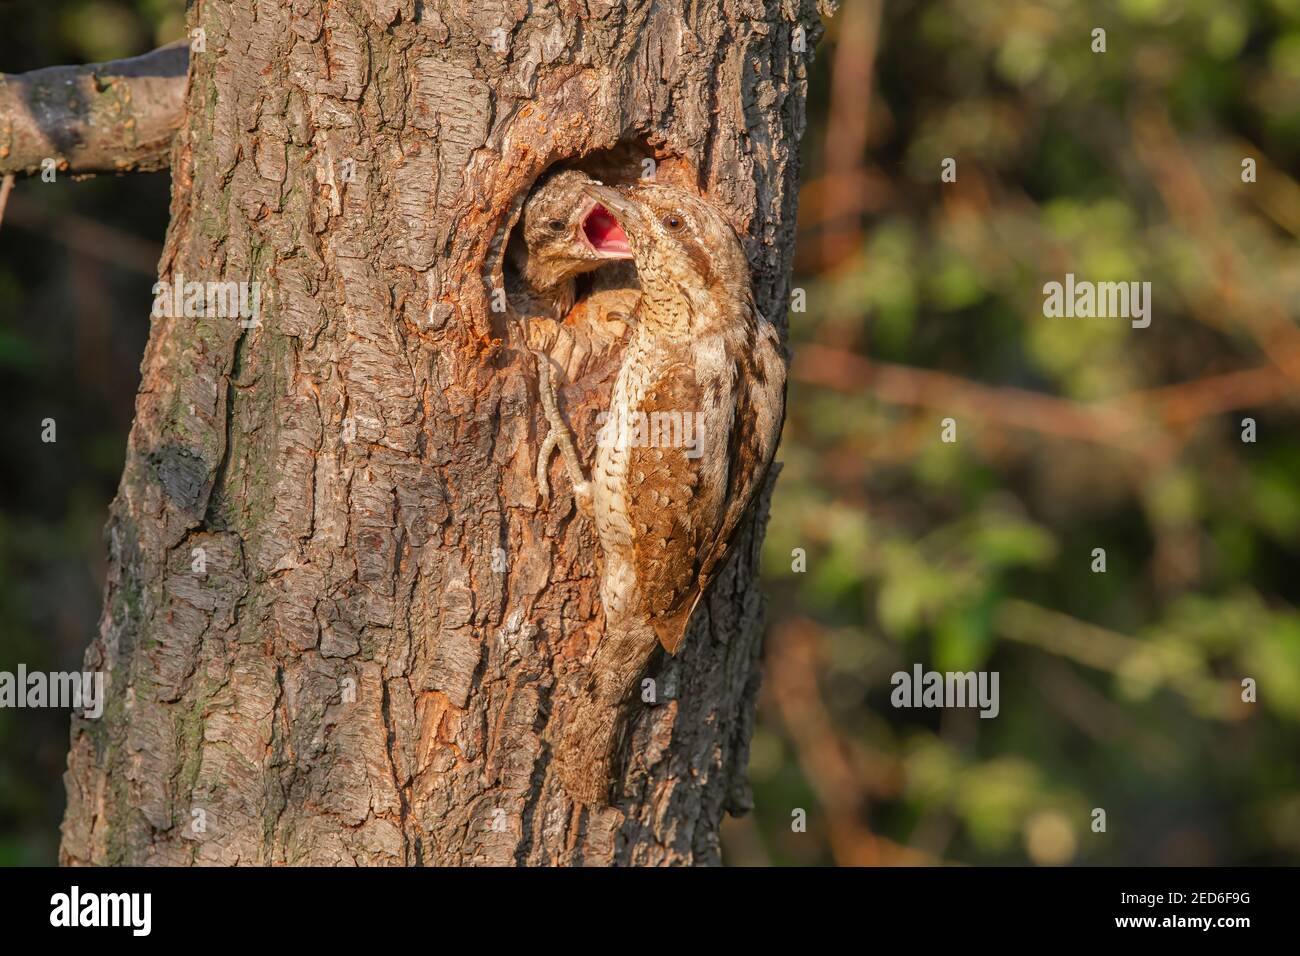 Eurasischer Wryneck, Jynx torquilla, erwachsen und Küken am Nest in einem Baum, Gabarevo, Bulgarien, 12. Juni 2012 Stockfoto